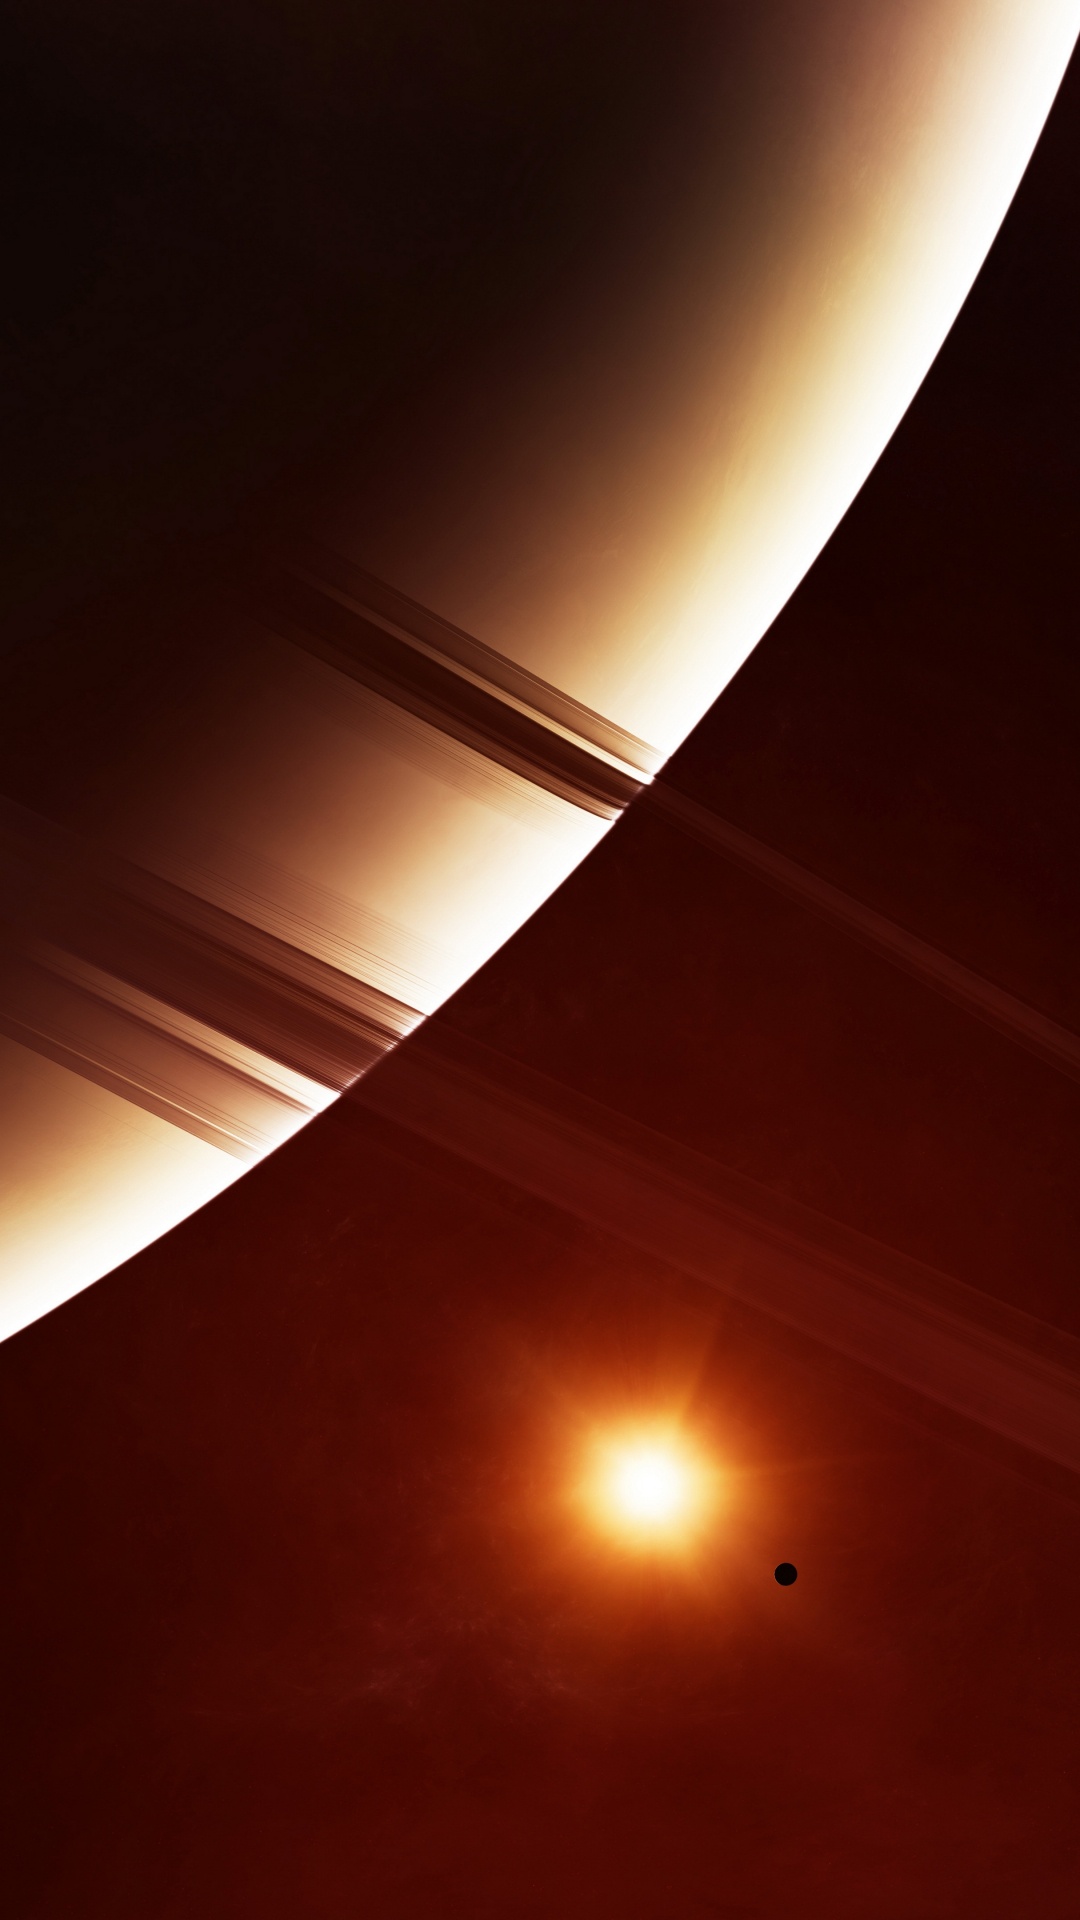 环系统, 土星, 这个星球, 天文学对象, 光 壁纸 1080x1920 允许